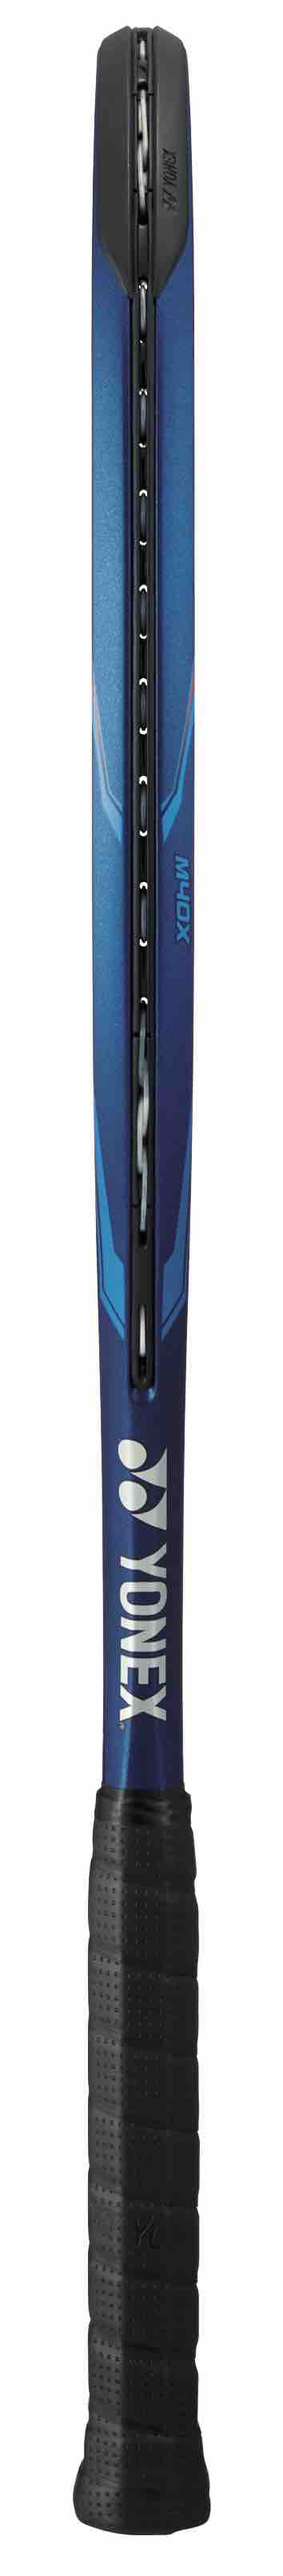 Yonex 2020 Ezone 100 300g 4 1/2 Tennis Racquet - Deep Blue